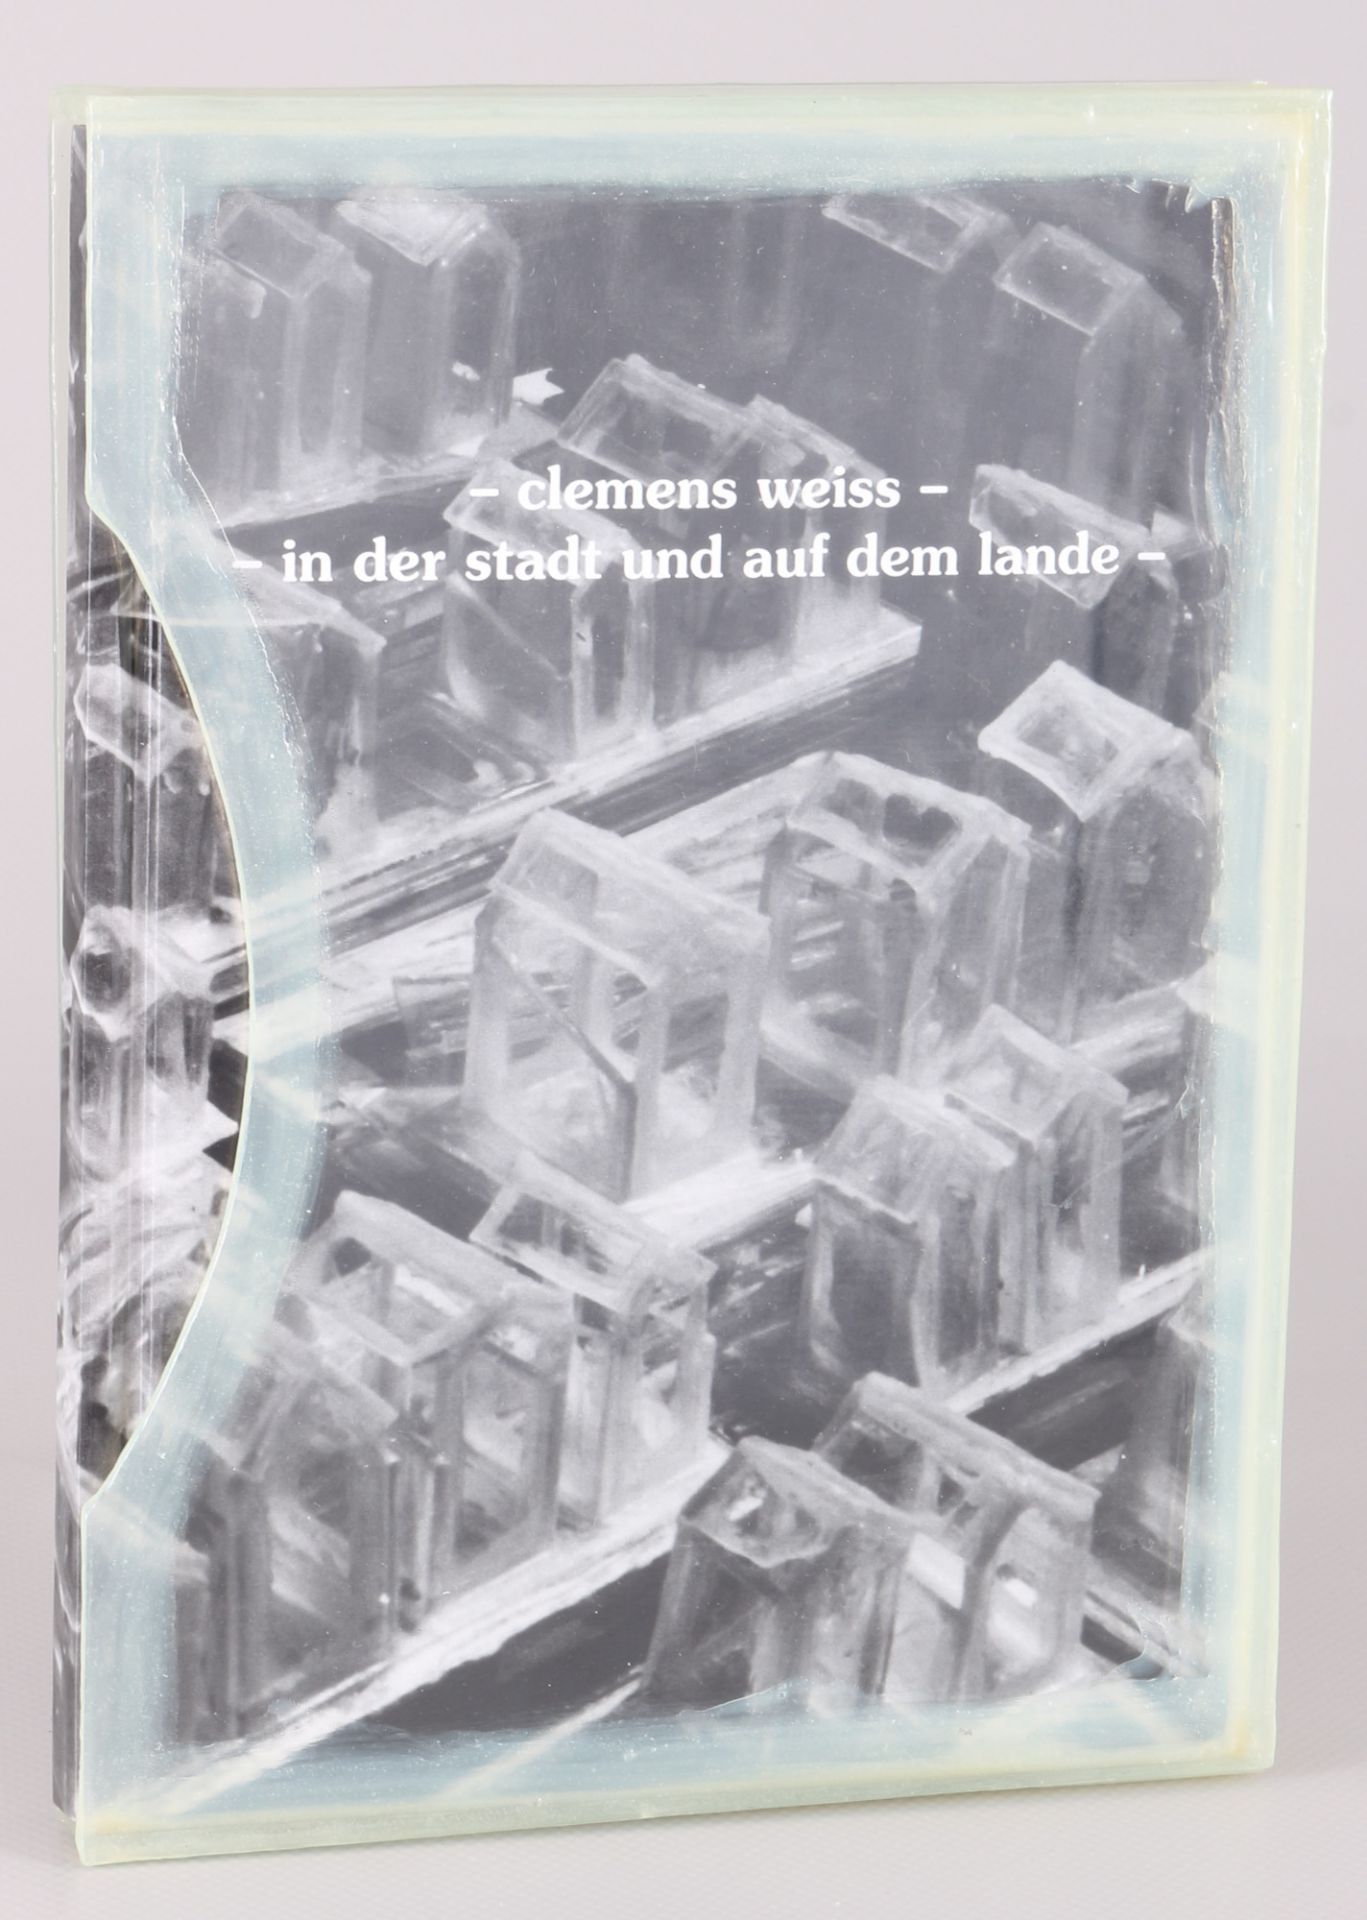 Clemens Weiss (1955) Buch Vorzugsausgabe in Vitrine - In der Stadt und auf dem Lande 1995 - Image 2 of 5